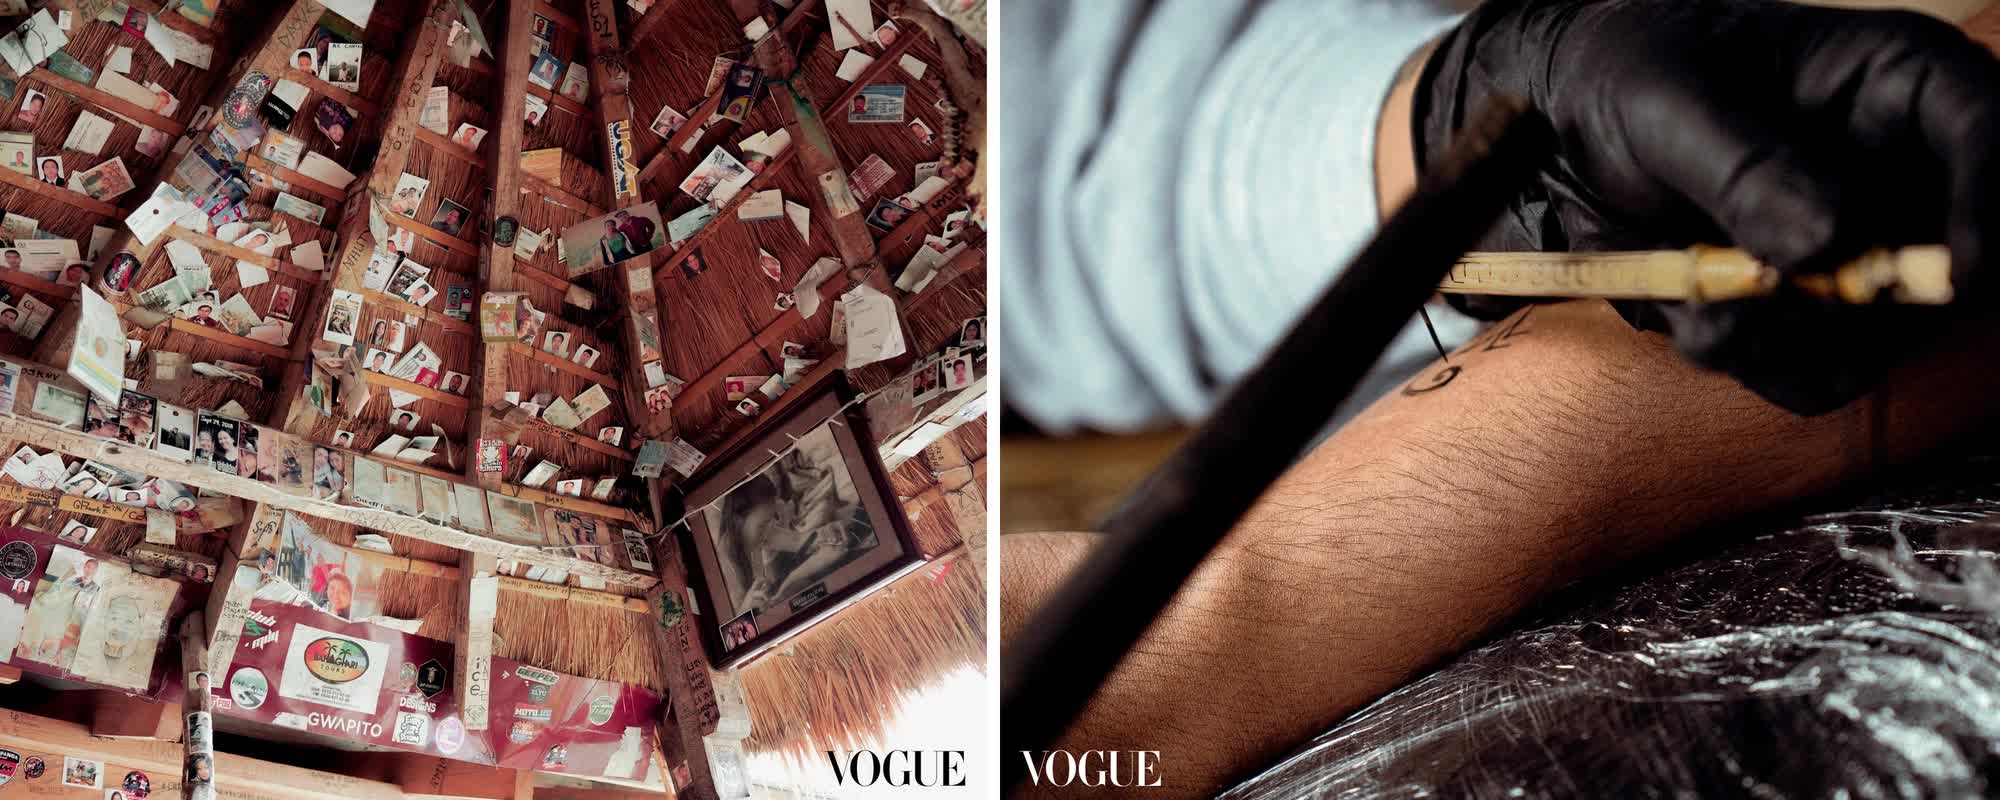 Nghệ nhân xăm mình 106 tuổi trên trang bìa tạp chí Vogue: Bí quyết sống thọ xoay quanh những điều đơn giản đến không ngờ - Ảnh 4.